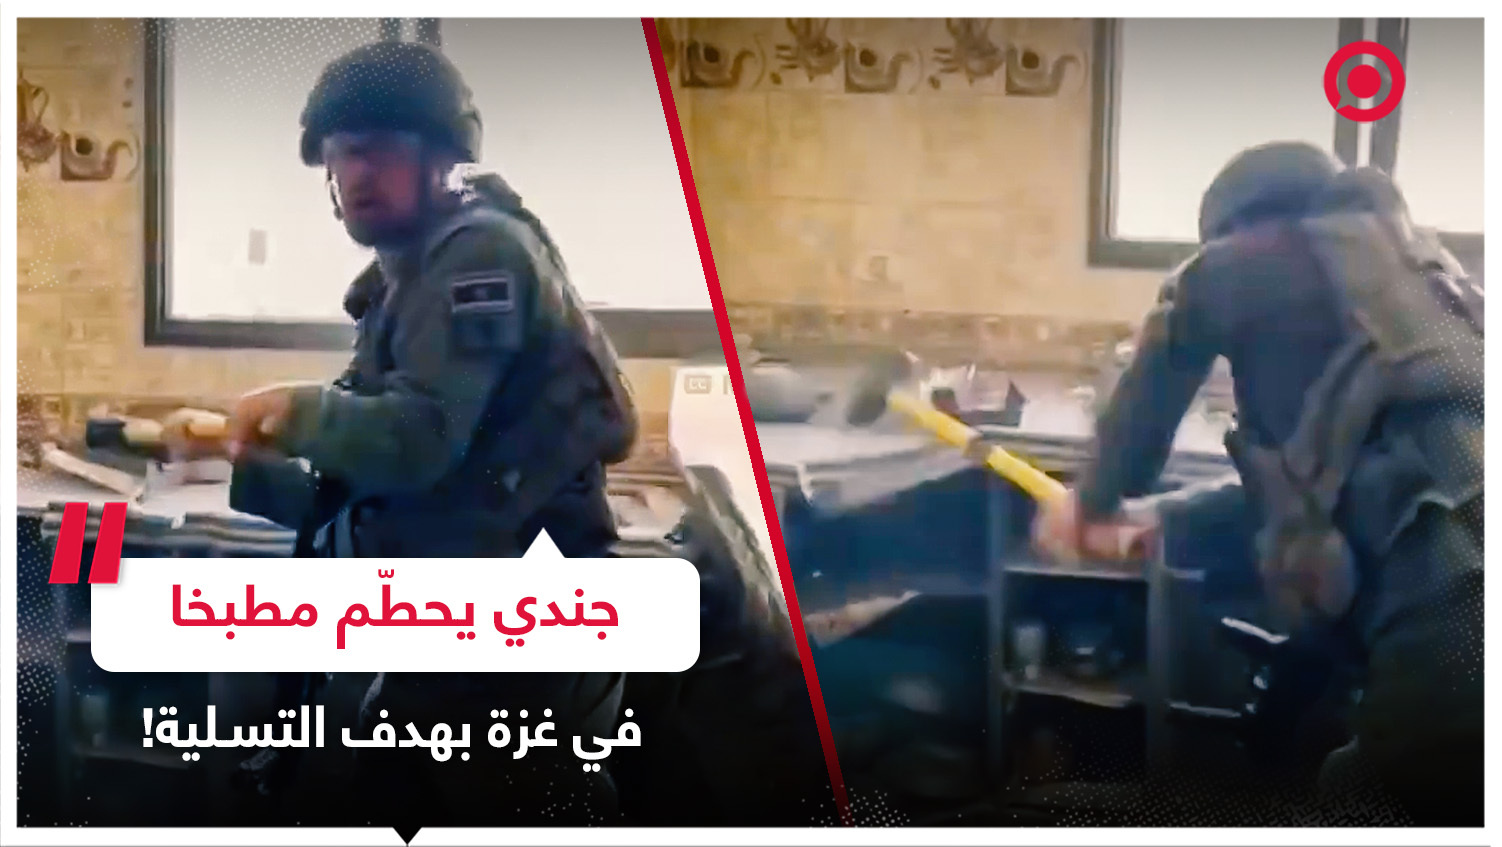 جندي إسرائيلي يلهو بتحطيم محتويات مطبخ في قطاع غزة